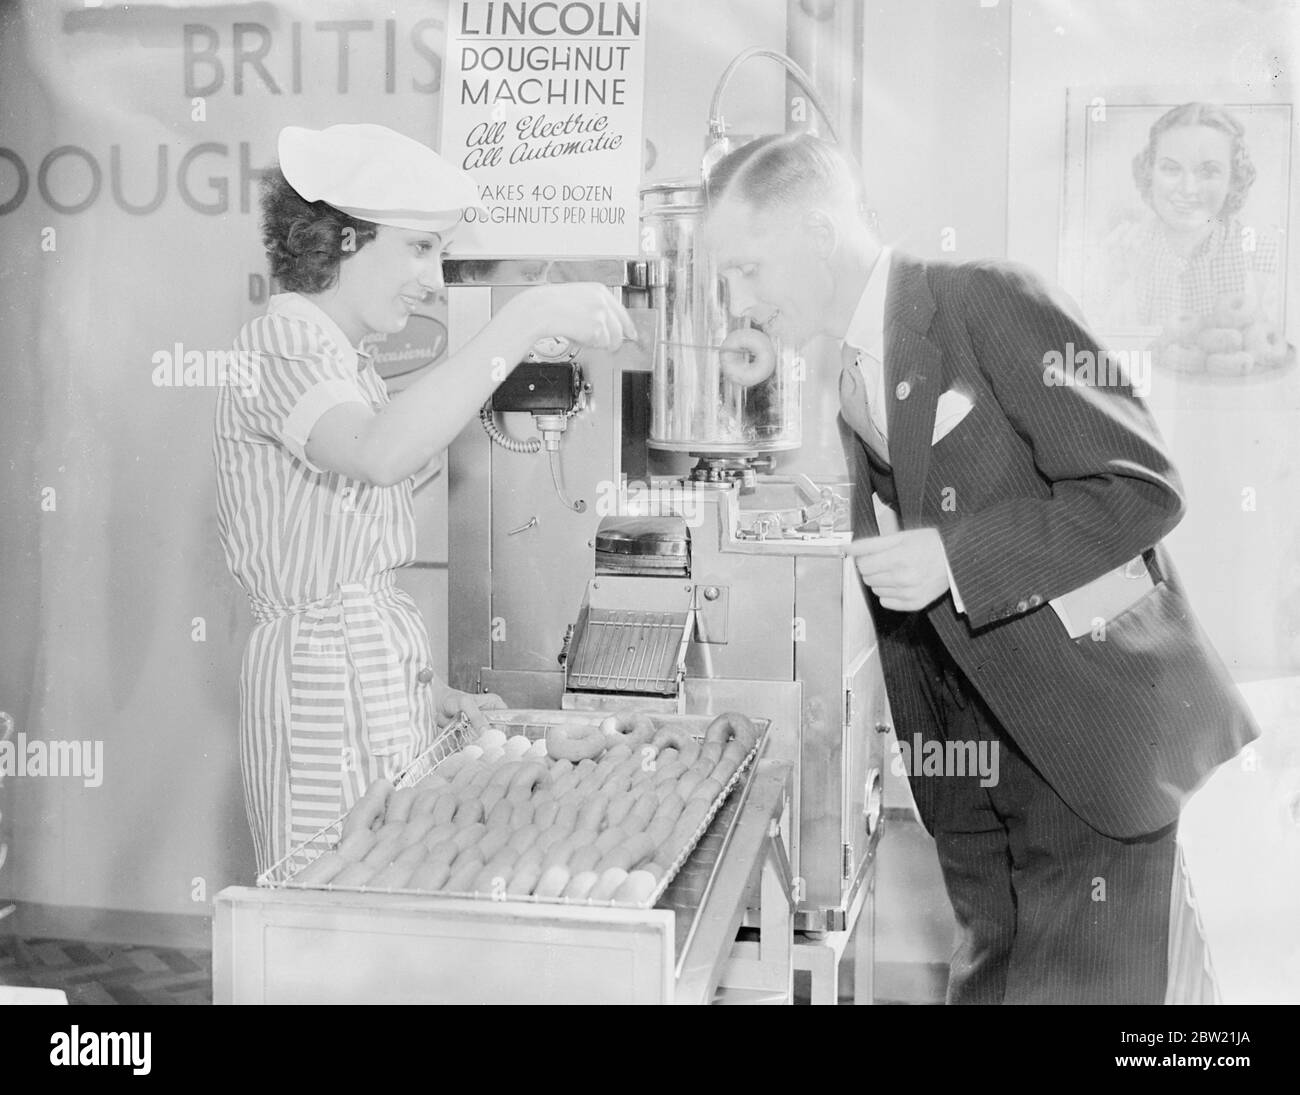 Le visiteur goûte un donut de la machine à l'exposition des boulangers au Royal Agricultural Hall, Islington, Londres. Cette machine, qui fait des beignets d'une formule secrète a évolué après des années de recherche, s'est avéré 40 douzaines de pâtisseries en une heure. 6 septembre 1937. Banque D'Images